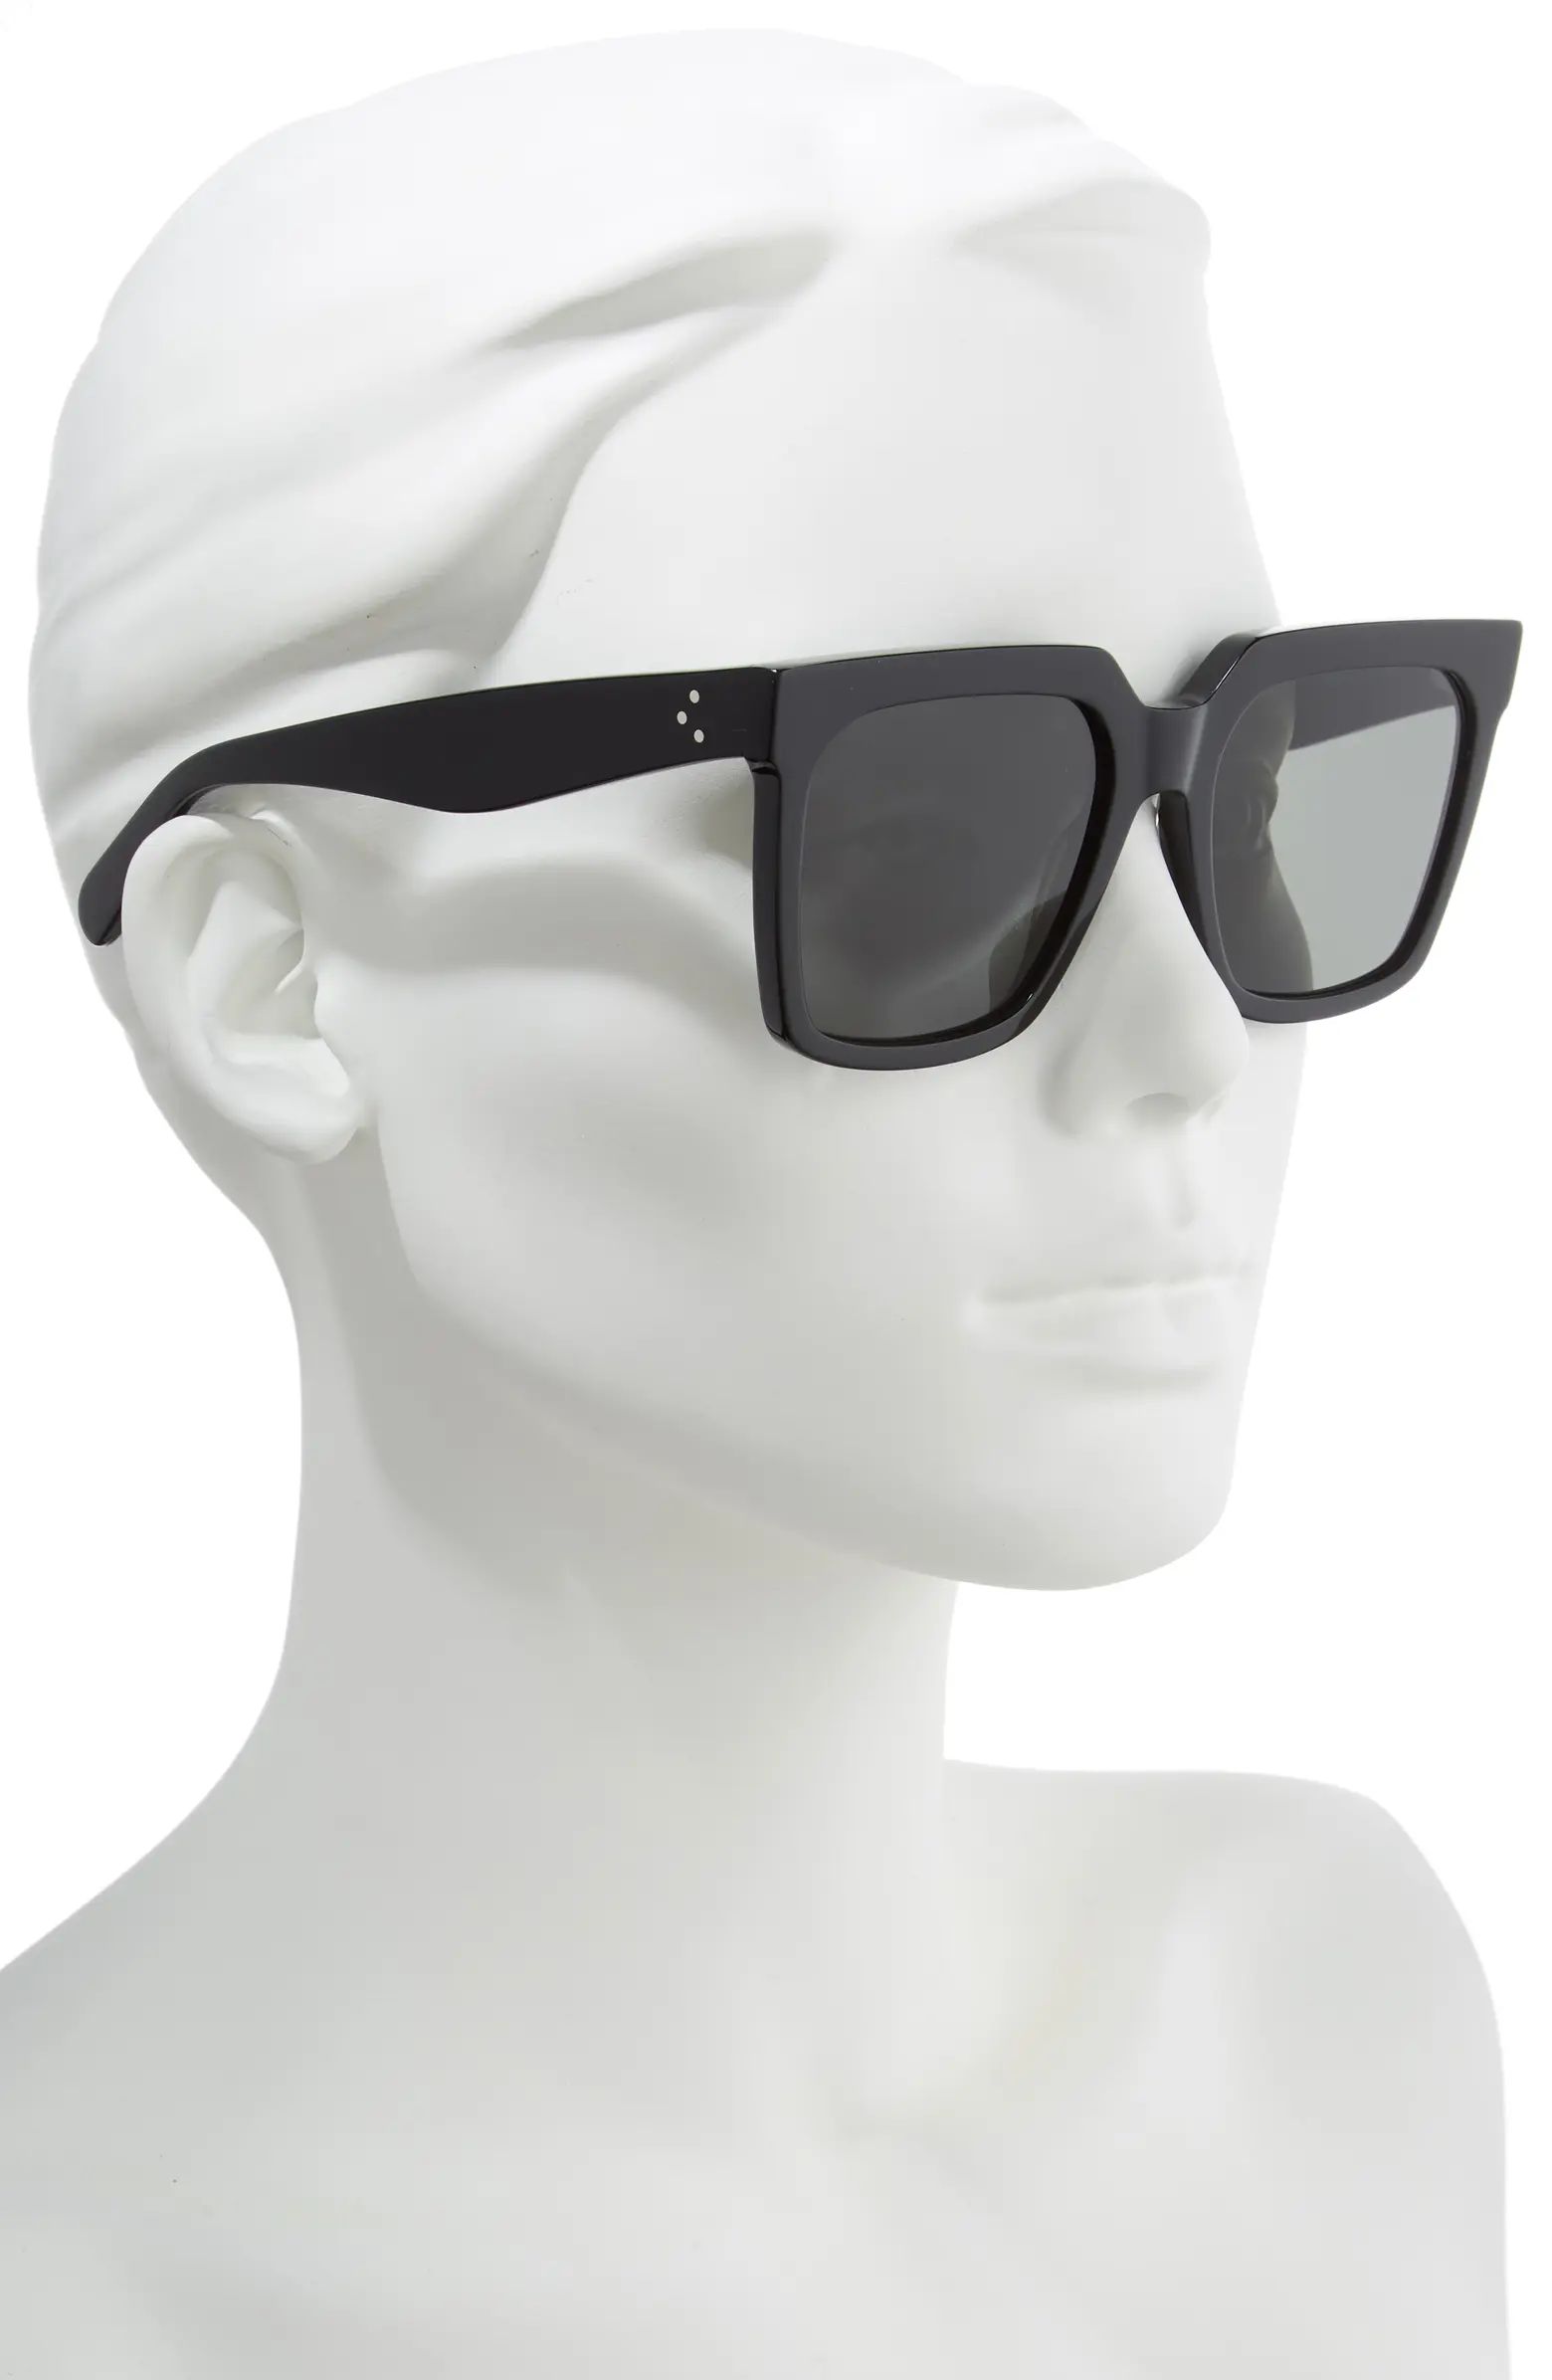 CELINE 55mm Polarized Square Sunglasses | Nordstrom | Nordstrom